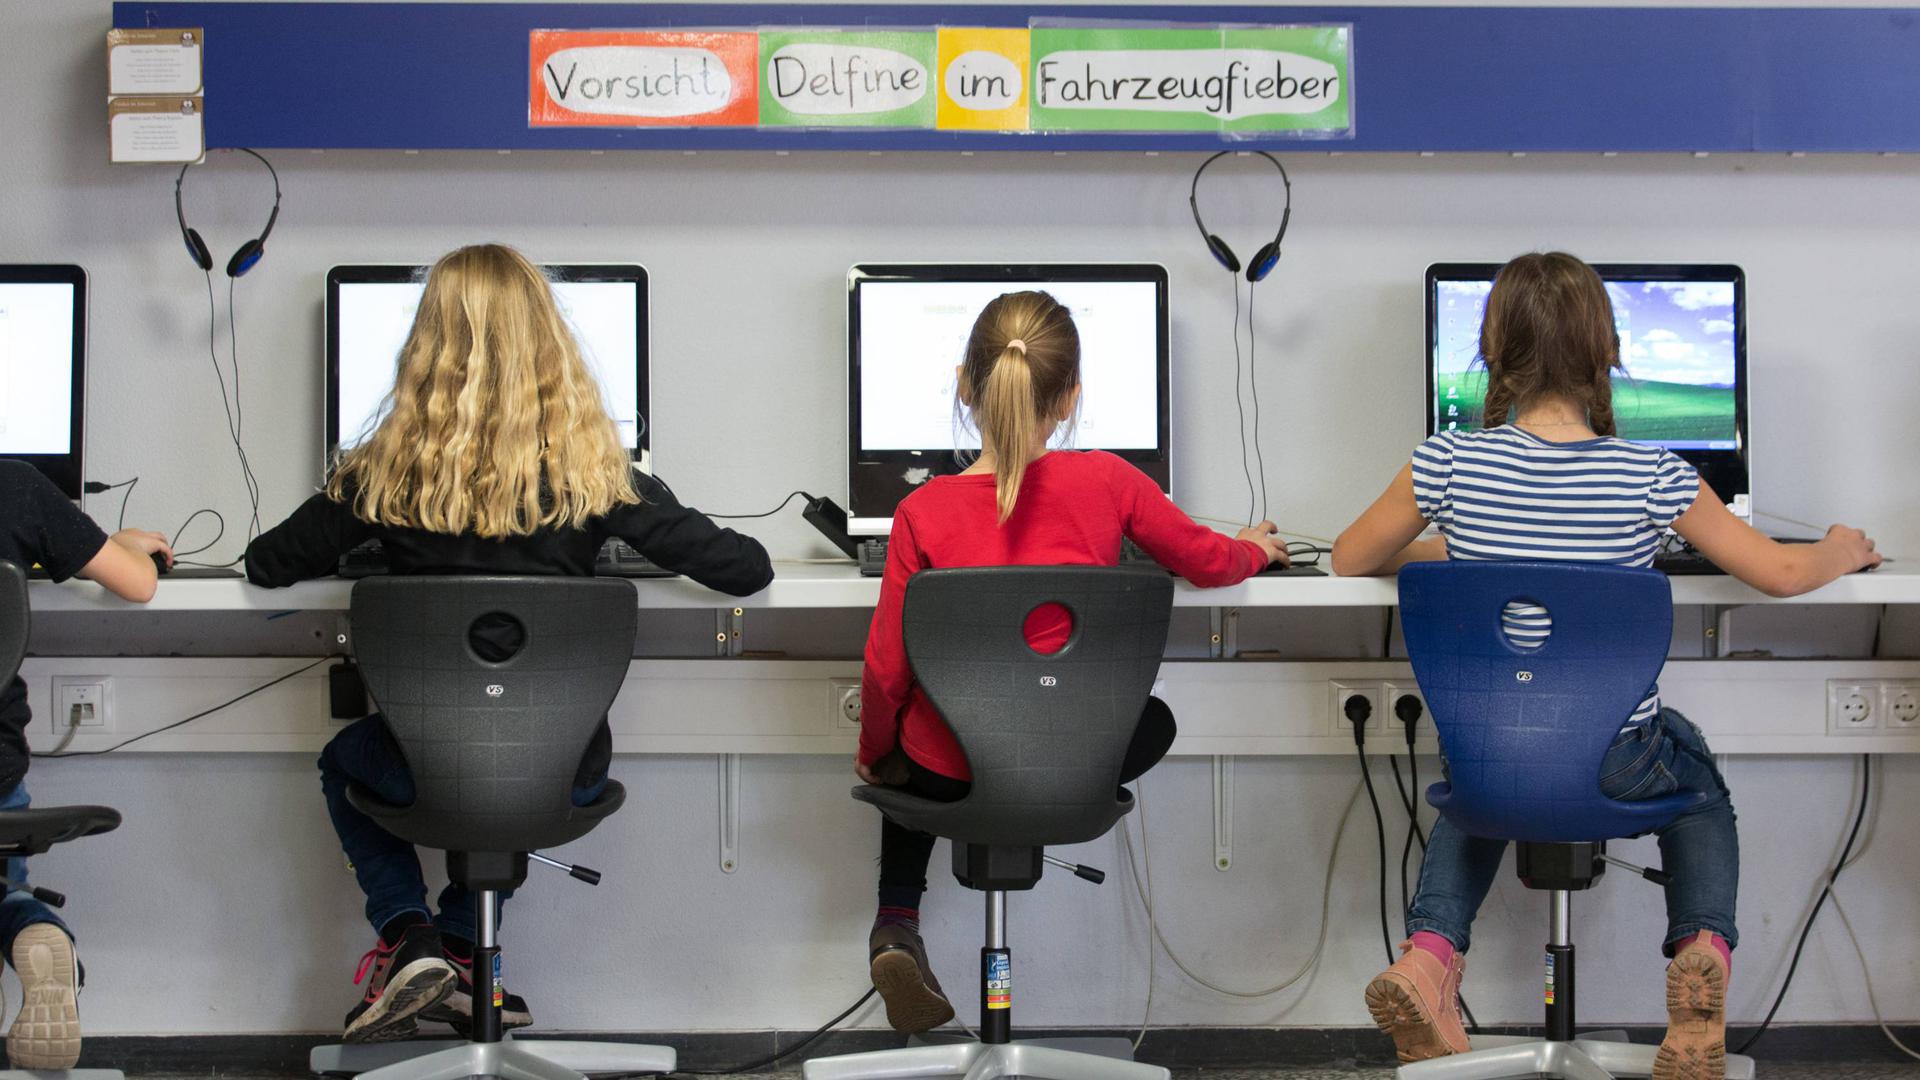 ARCHIV - 18.10.2017, Niedersachsen, Schüttorf: Schüler arbeiten in einem Klassenraum einer Grundschule an Computern. (zu dpa «Durchbruch für geplante Digitalisierung der Schulen» vom 23.11.2018) Foto: Friso Gentsch/dpa +++ dpa-Bildfunk +++ | Verwendung weltweit

